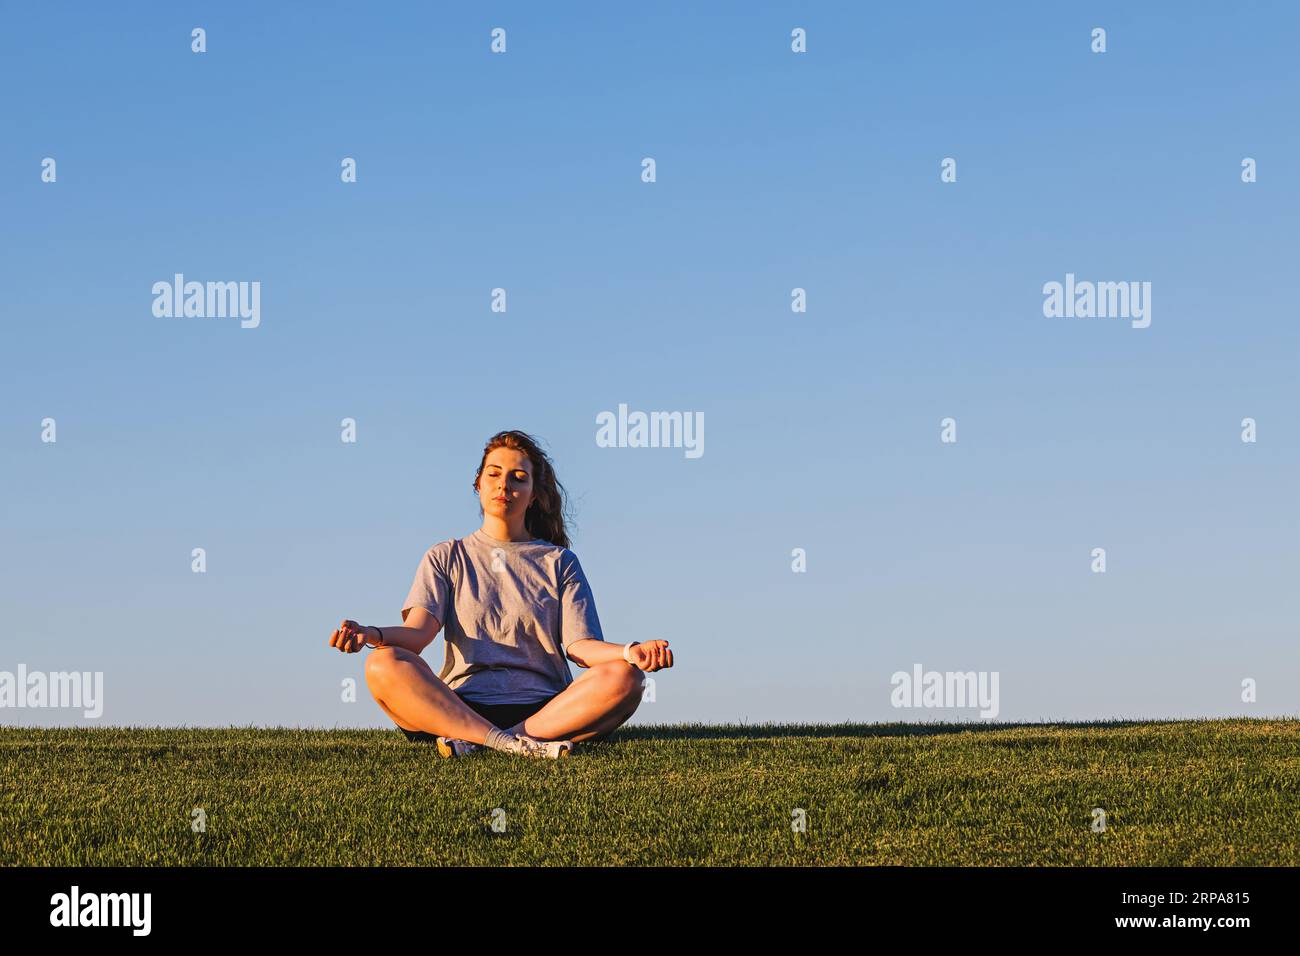 Femme assise dans une pose de méditation sur la pelouse verte au-dessus du ciel bleu, concept de pleine conscience Banque D'Images